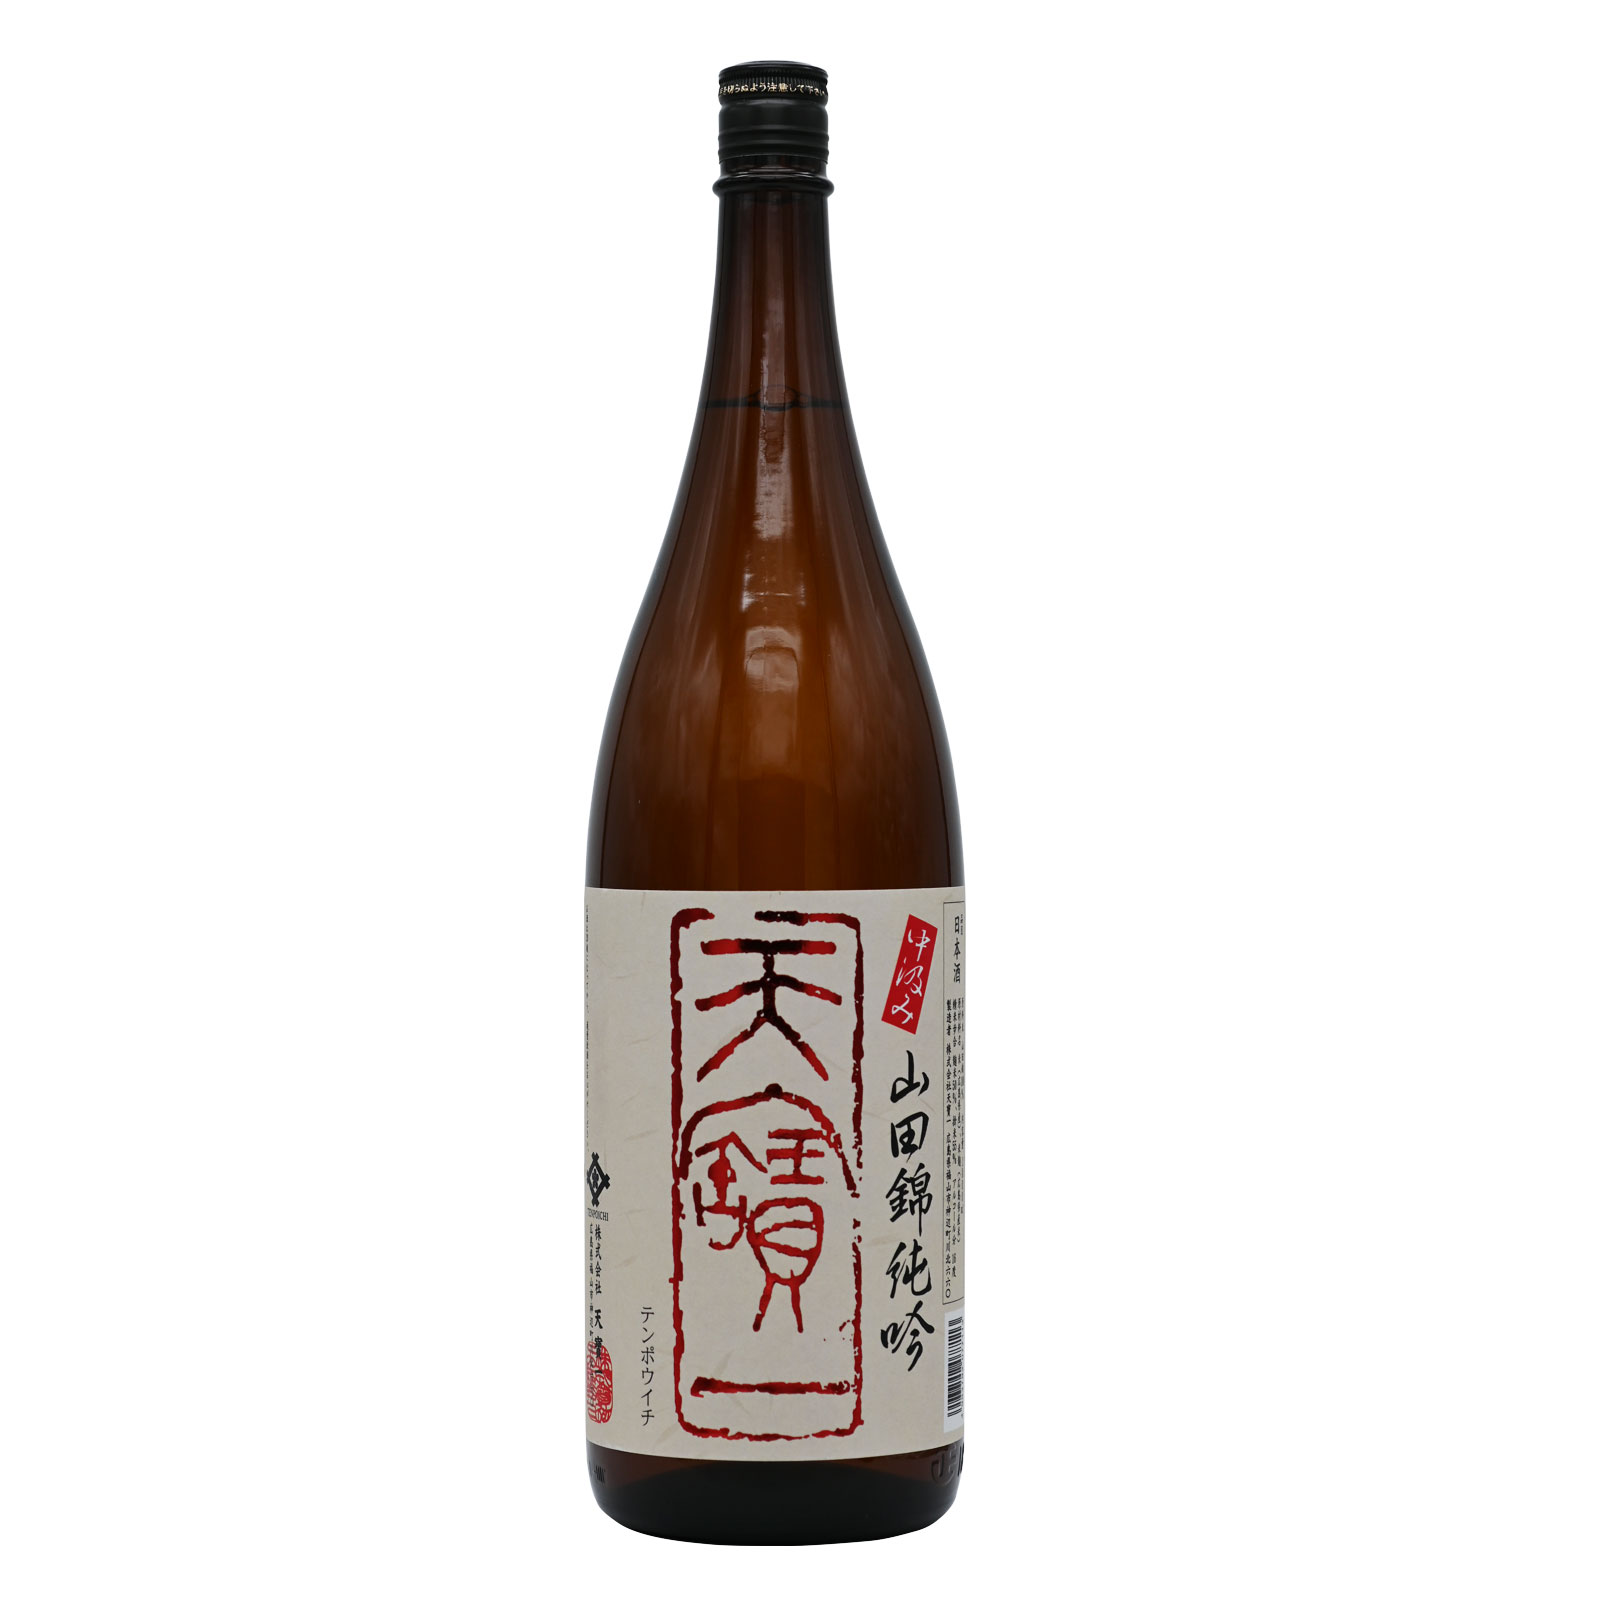 saké japonais KIKUSUI JUNMAI GINJYO alc 15.5% - 300ml